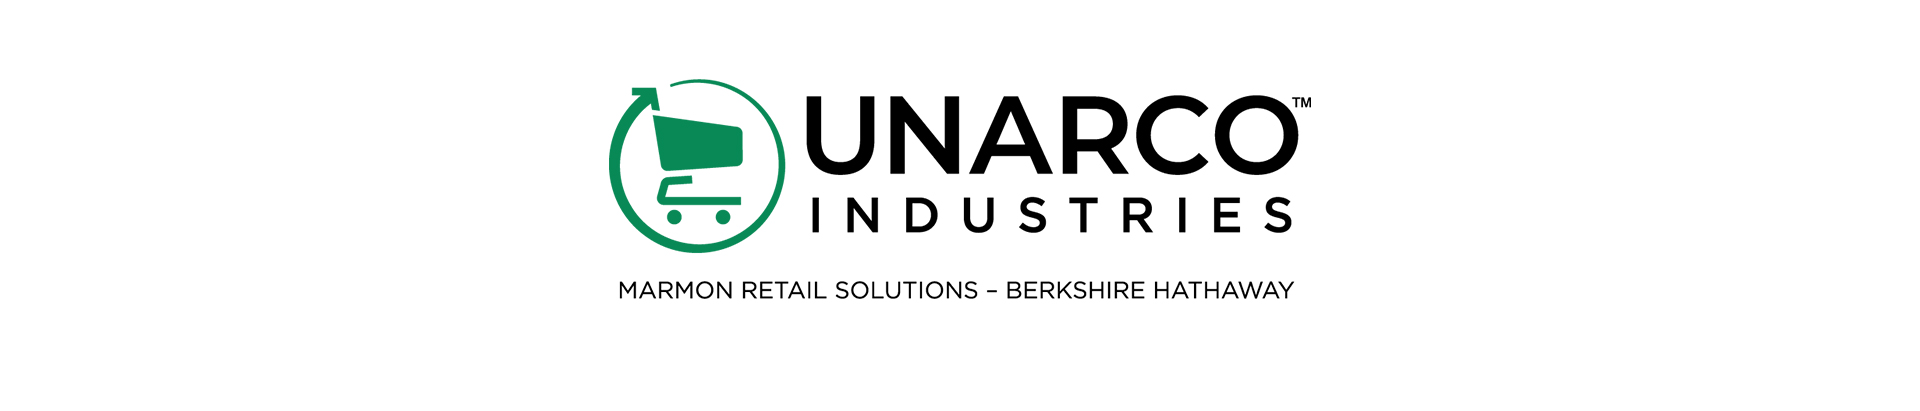 Unarco Industries rebranded logo